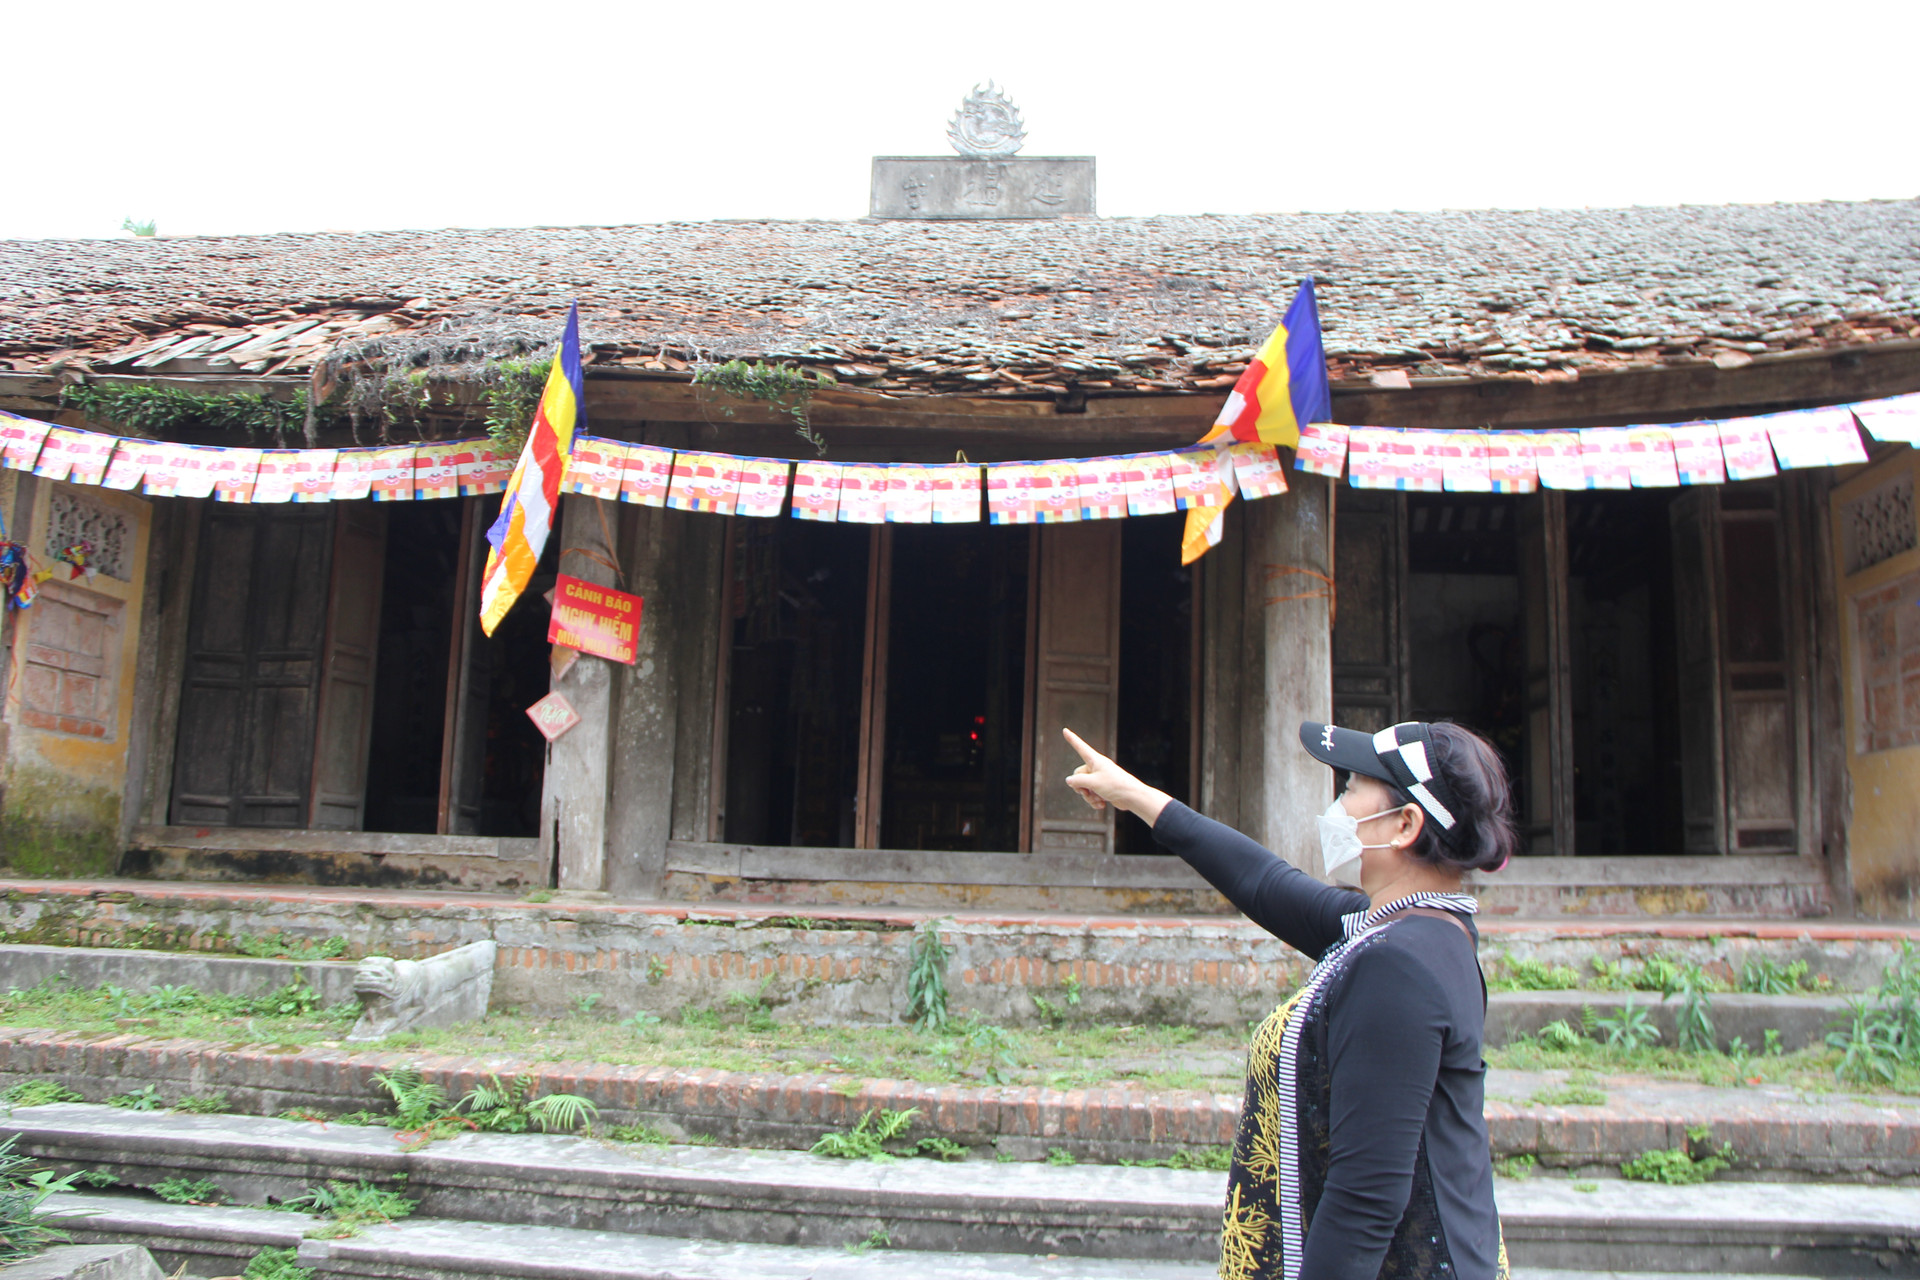 Bà Phan Thị Viễn - một người dân thôn Đại Nghiệp cho biết: Lý do chùa bị xuống cấp mà không được sửa chữa là do chưa giải quyết xong việc con đường đi ngay cạnh chùa. Cho nên chưa thể quy hoạch và tu bổ, sửa chữa được.